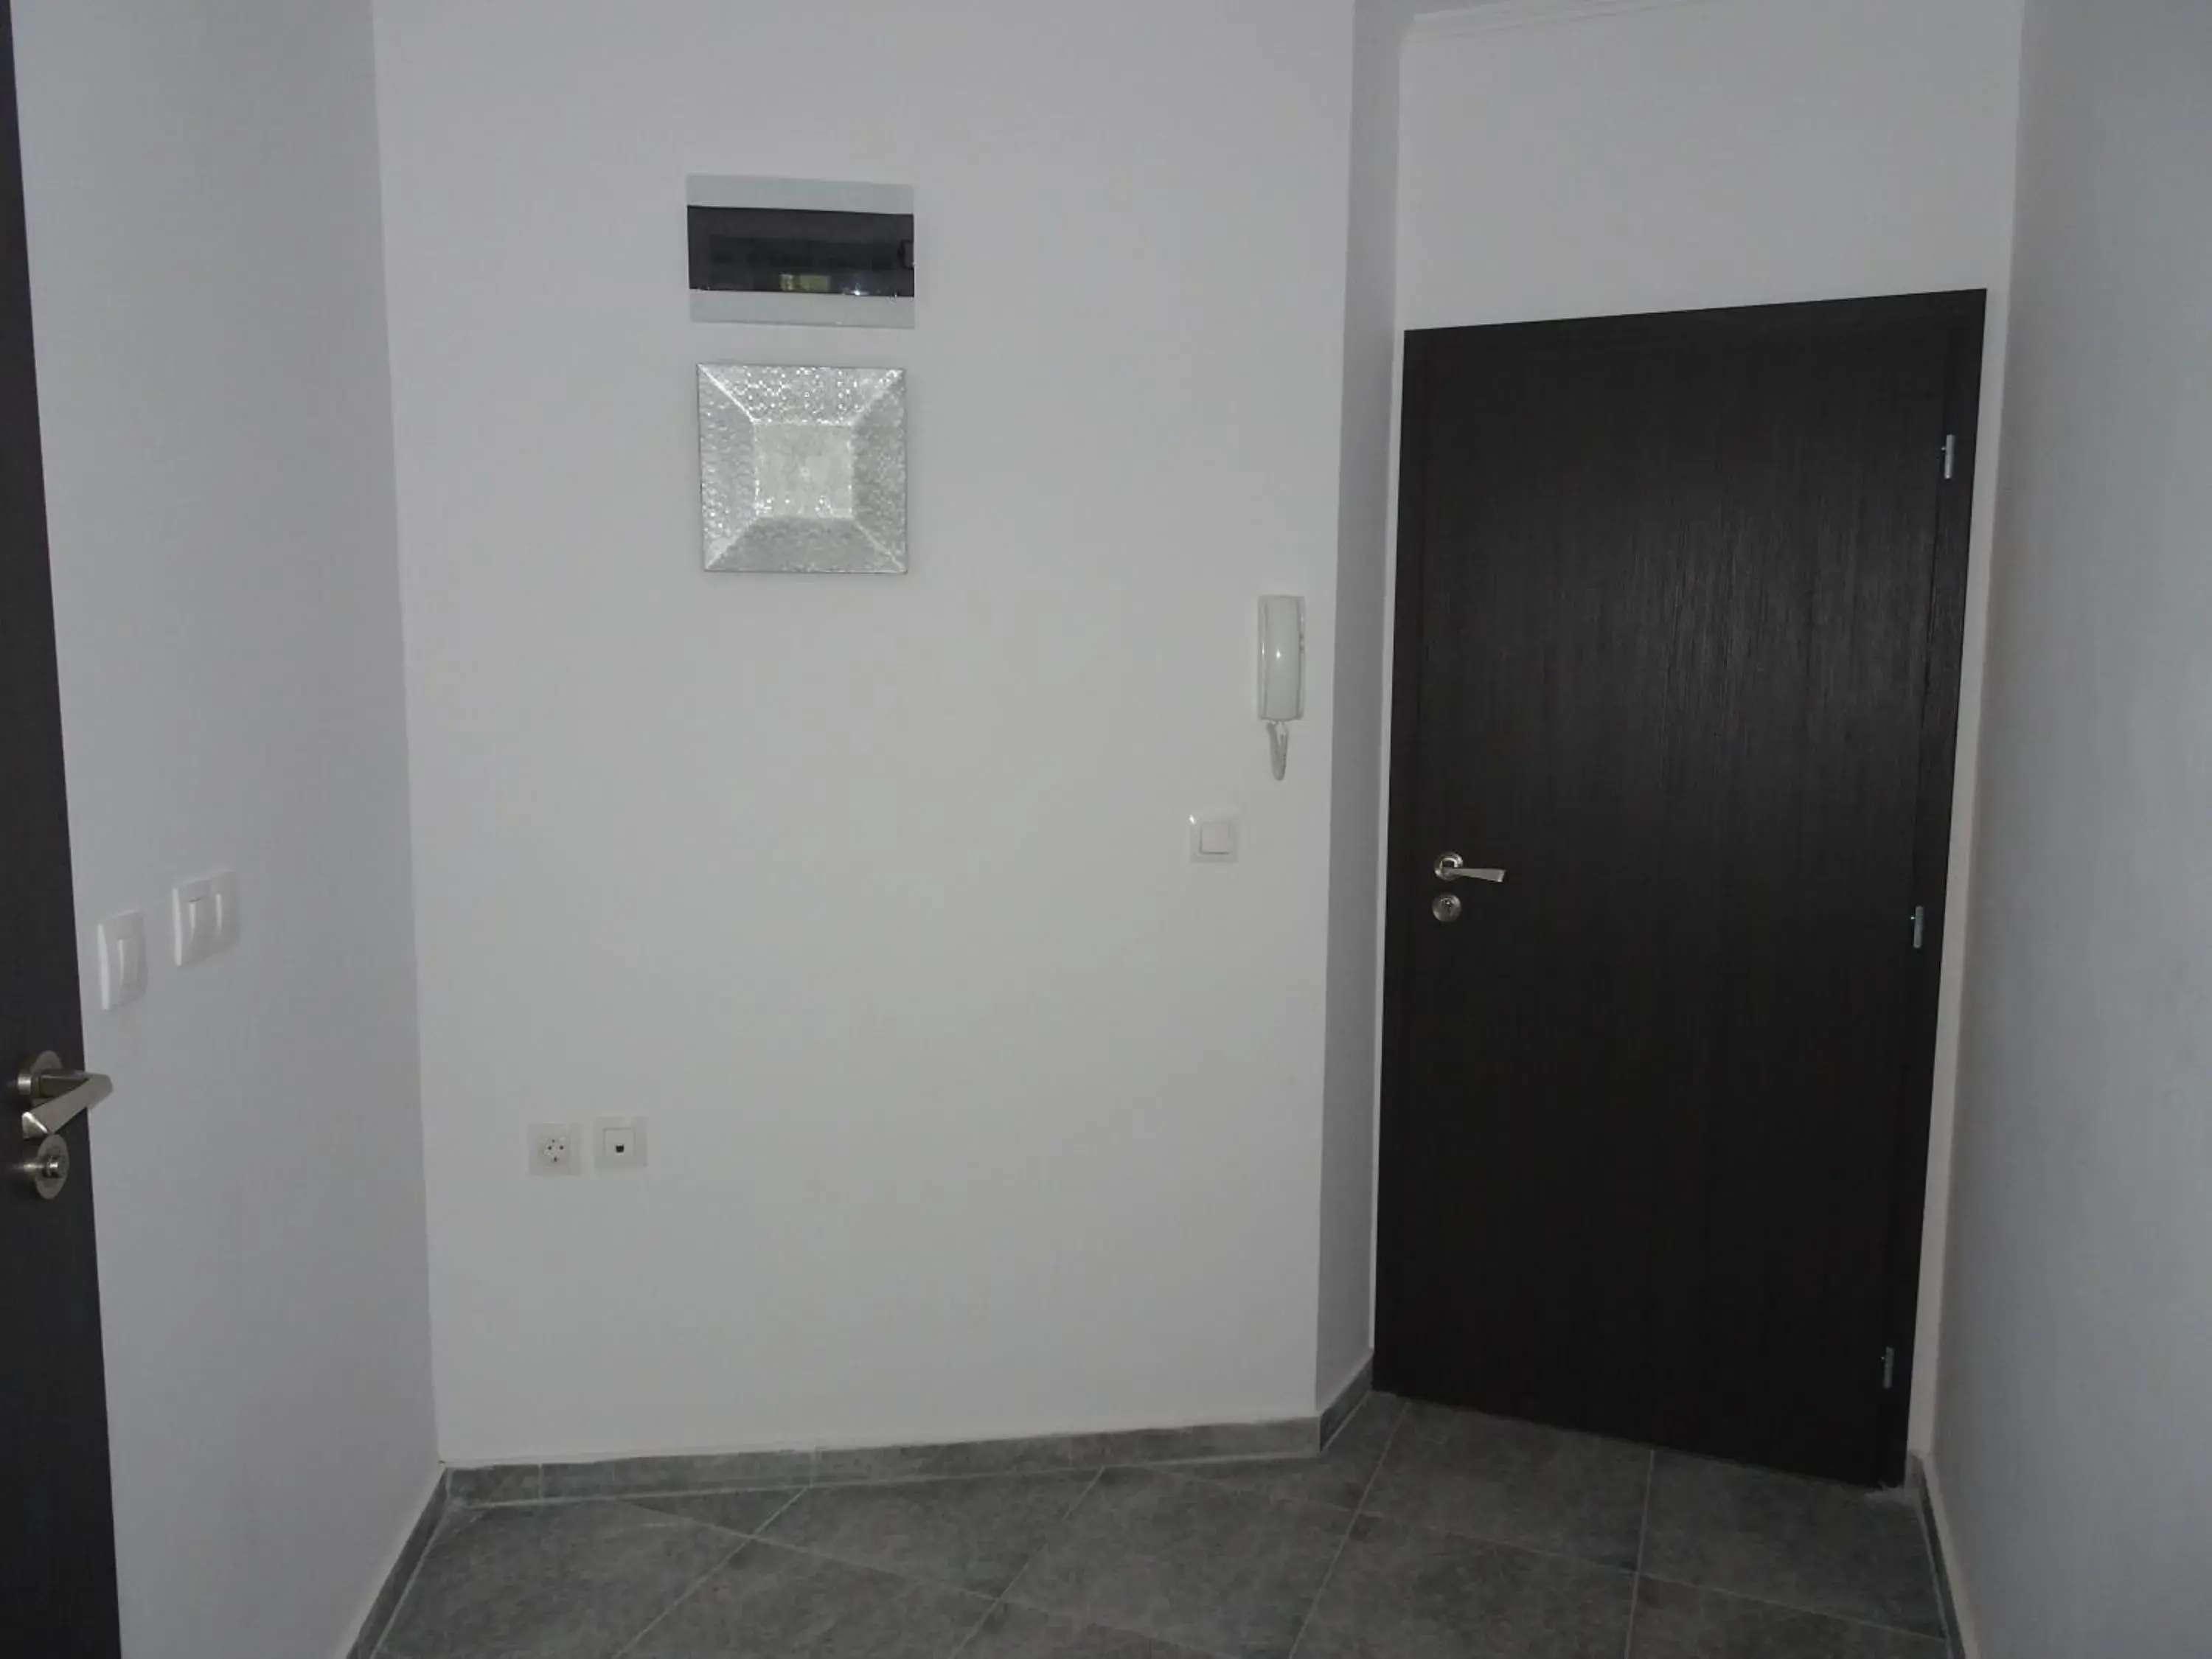 Area and facilities, Bathroom in Hotel Samara